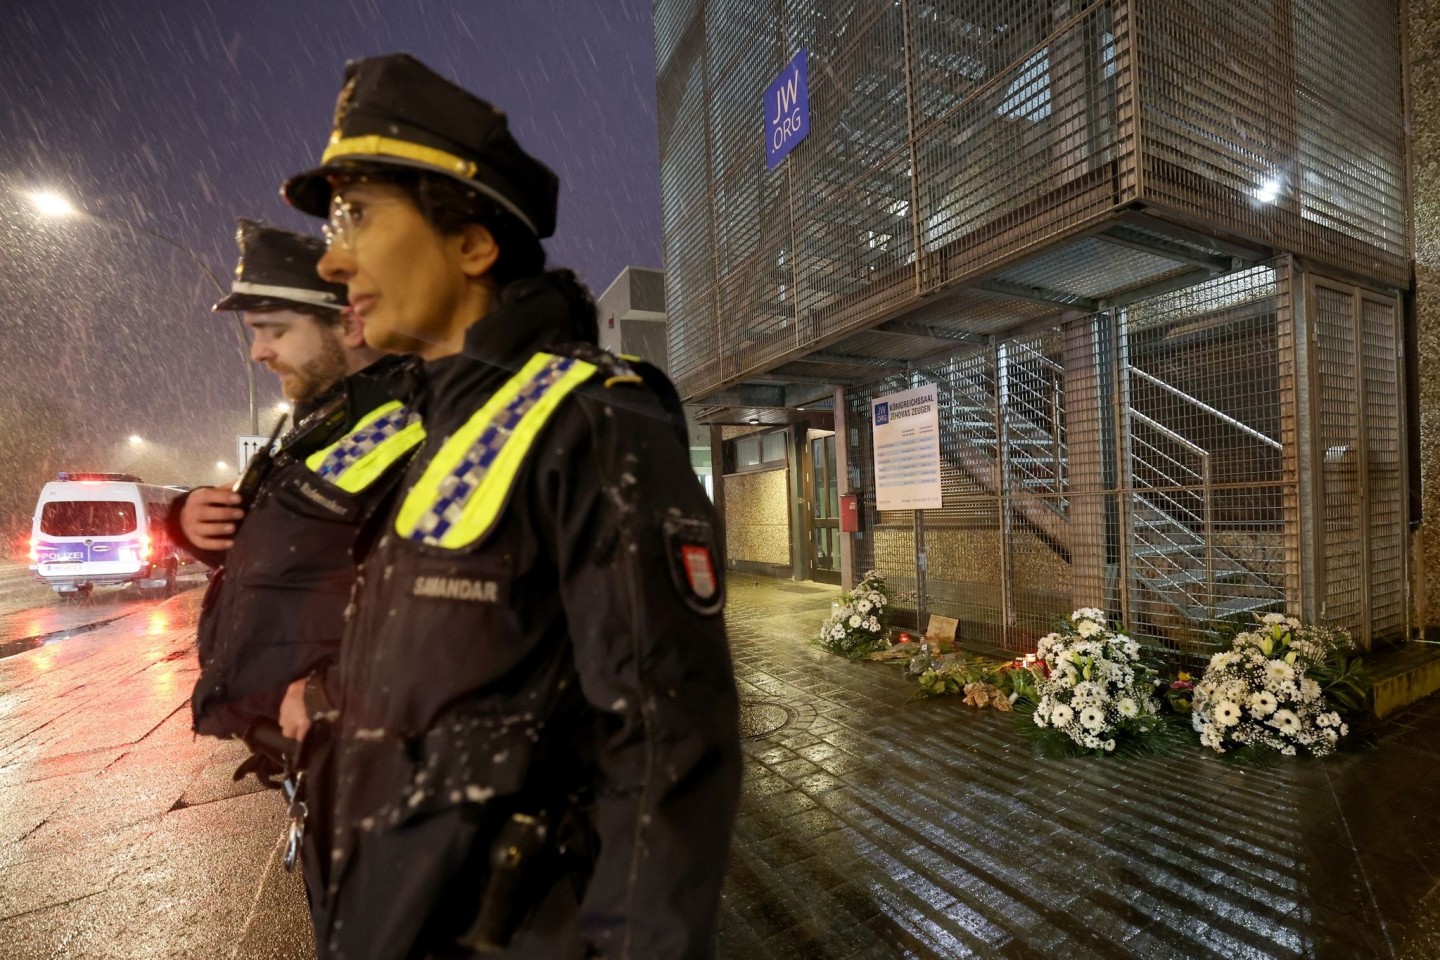 Polizeibeamte in Hamburg vor dem Gebäude der Zeugen Jehovas, wo ein Amokläufer erst sieben Menschen und dann sich selbst tötete.